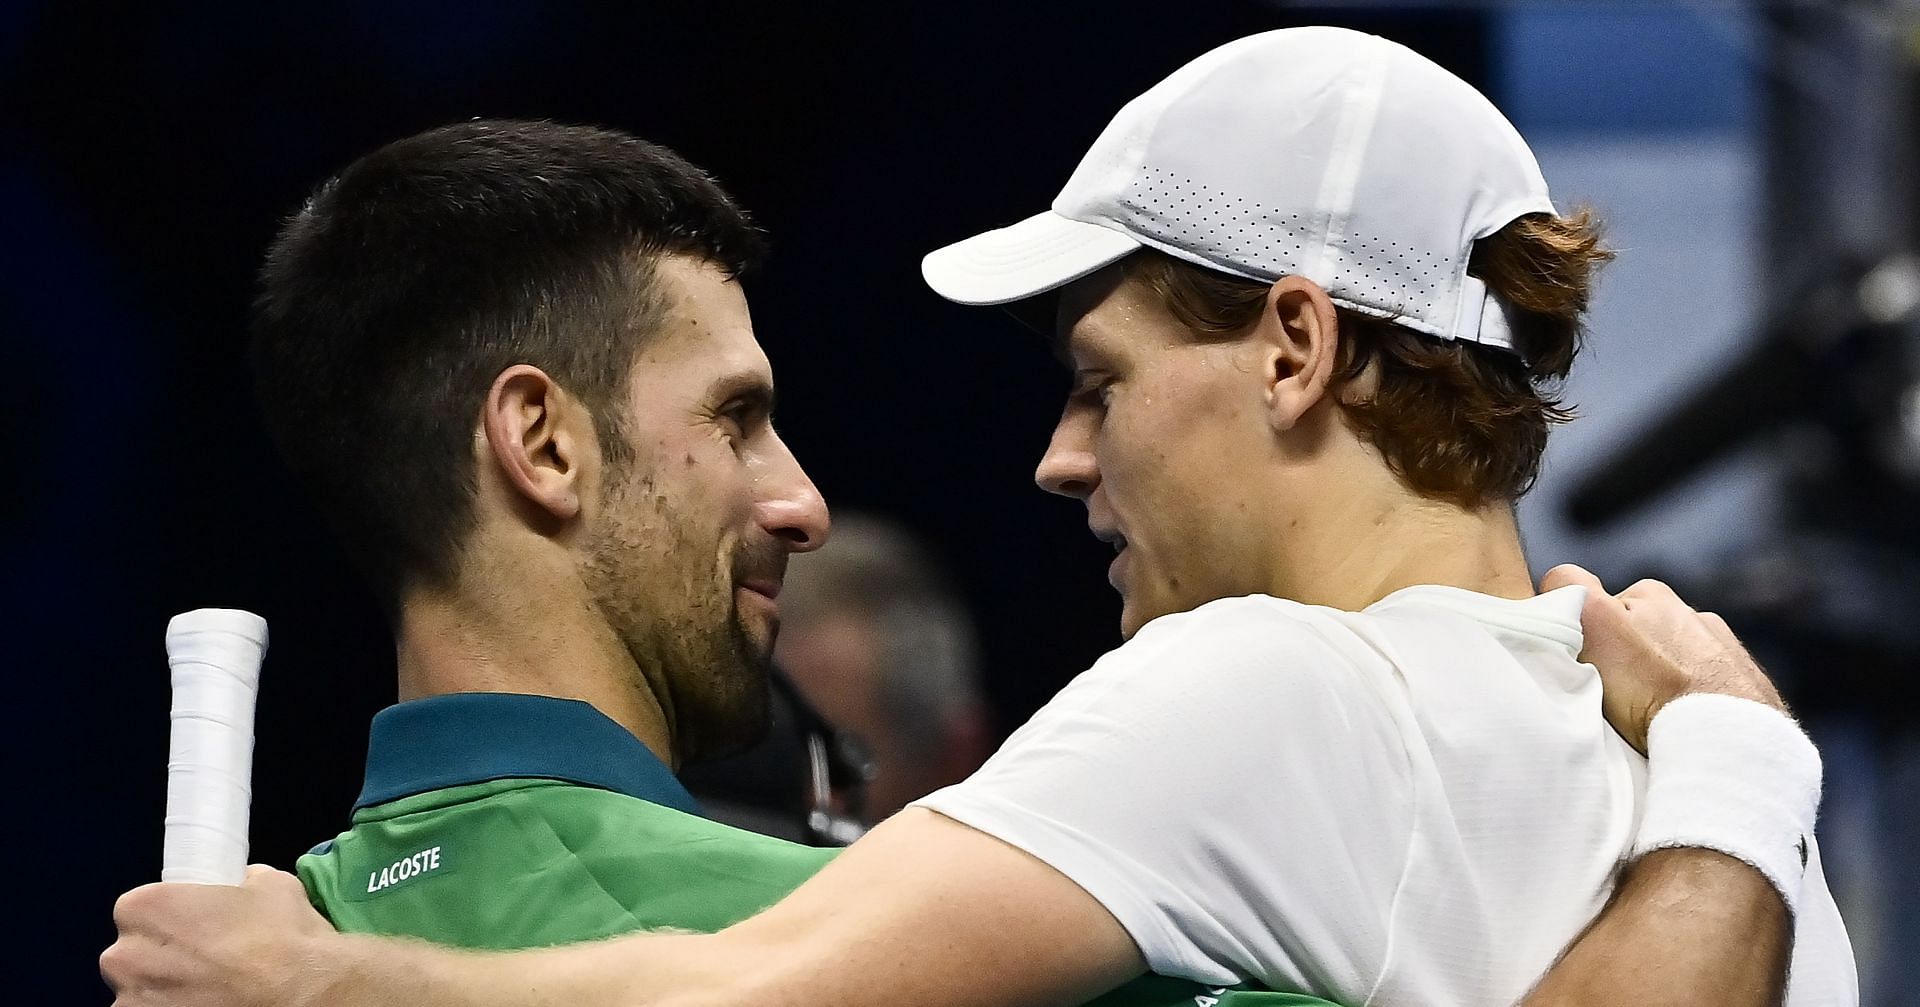 Novak Djokovic and Jannik Sinner embrace after their round-robin match at the ATP Finals